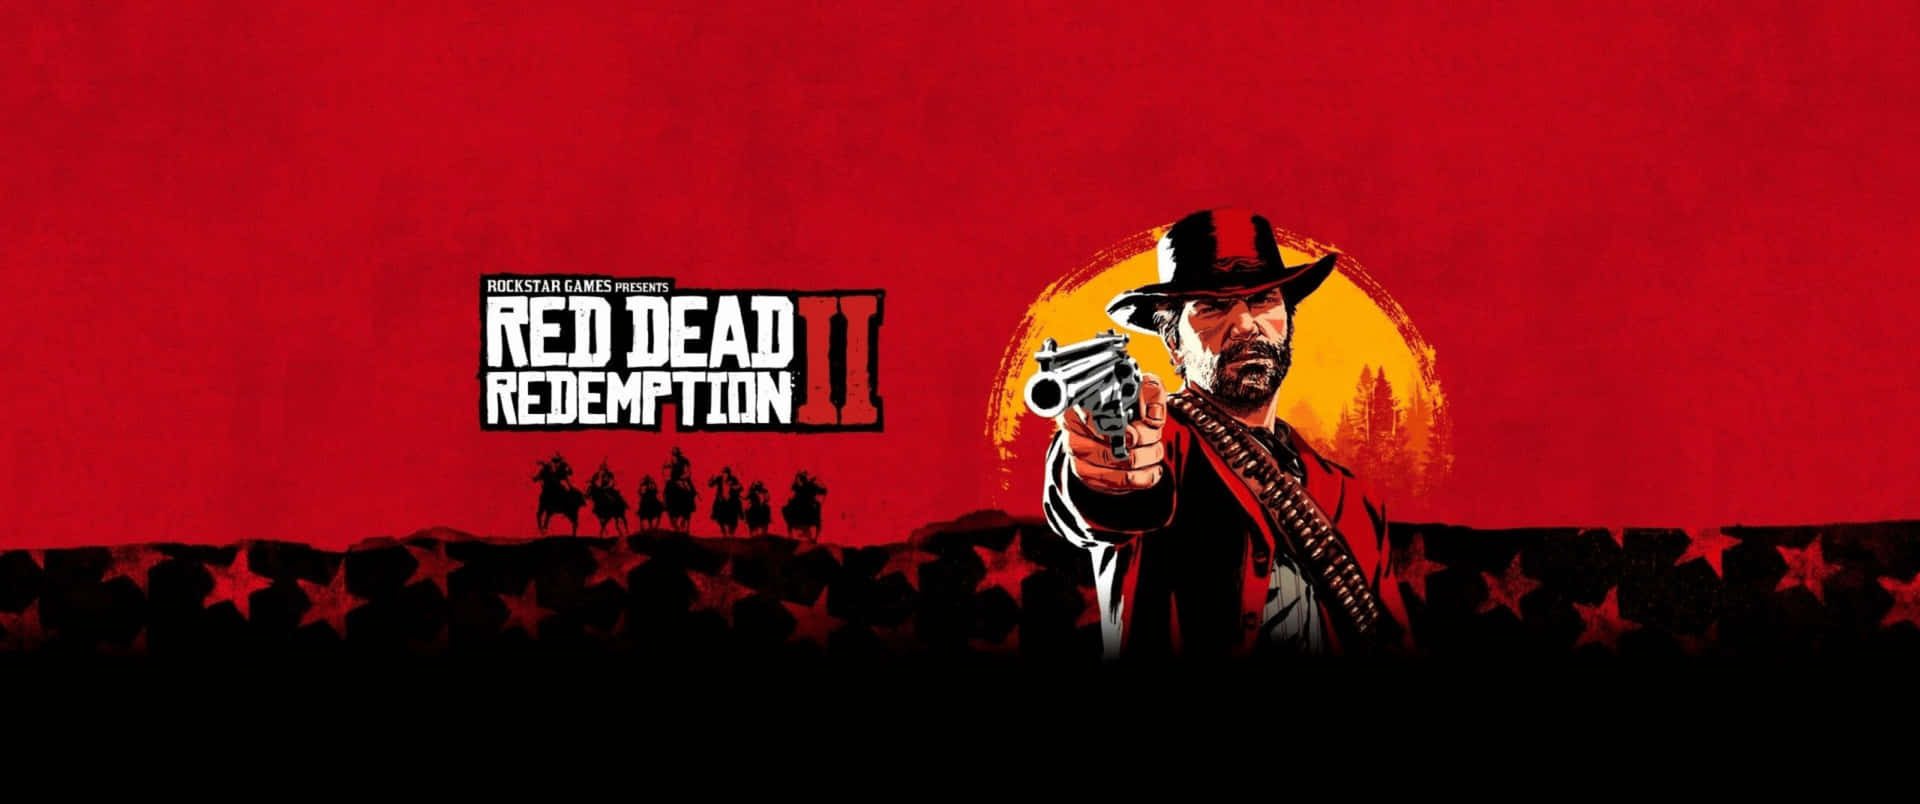 3440x1440p Fondos De Red Dead Redemption 2